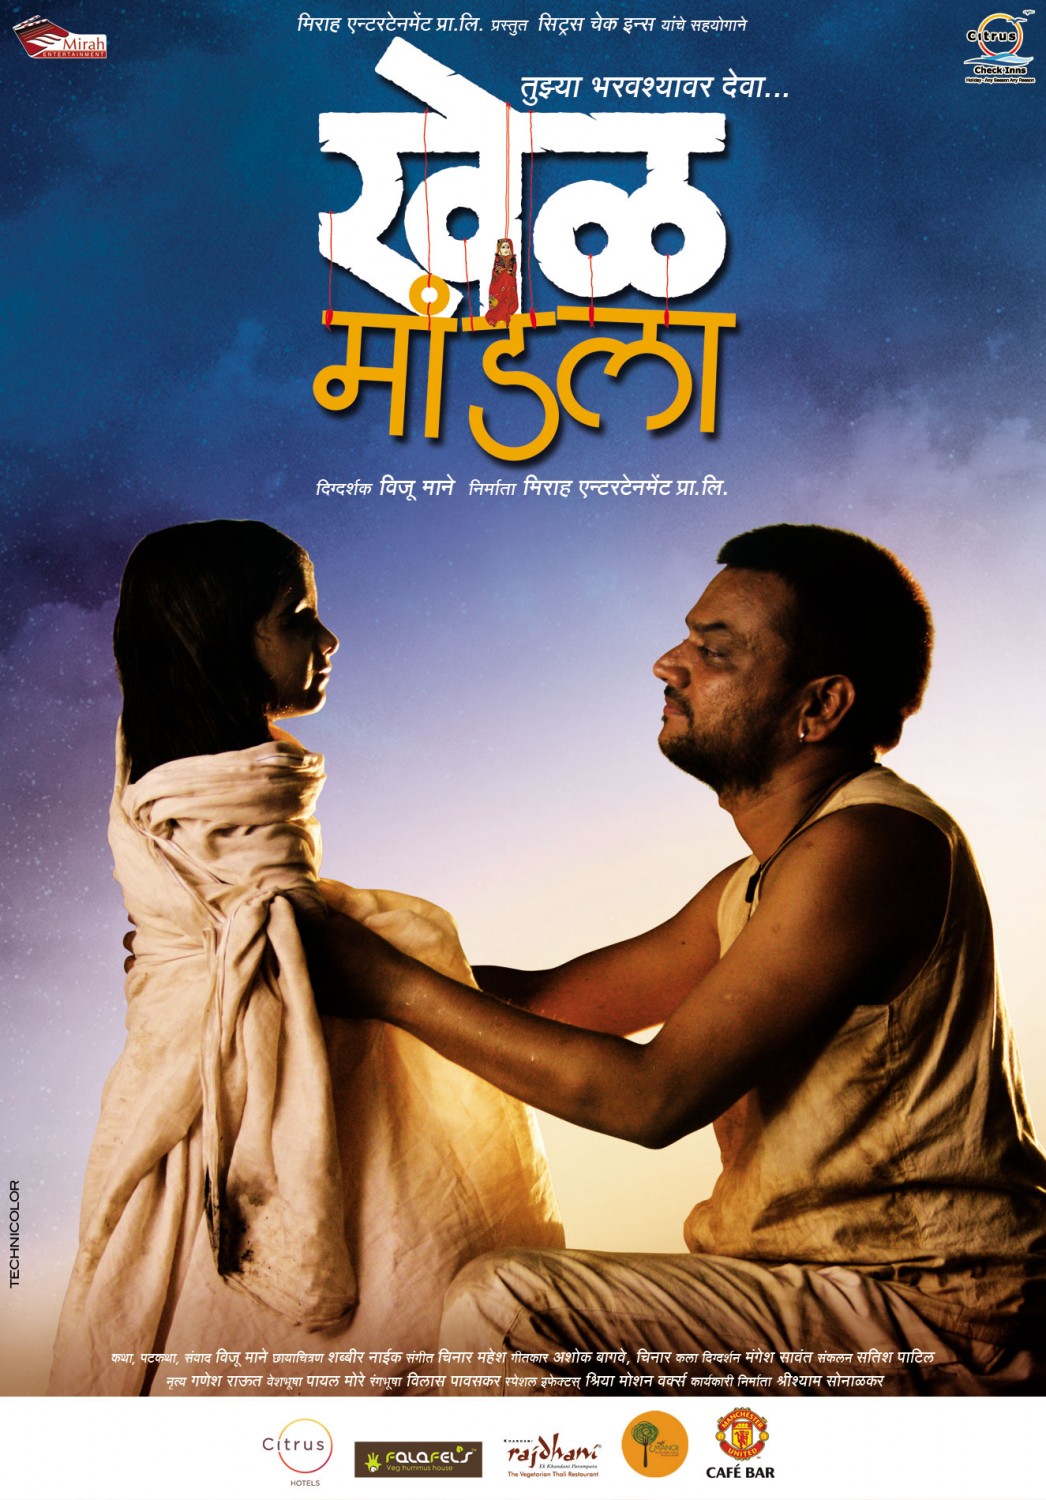 Extra Large Movie Poster Image for Khel Mandala (#3 of 13)